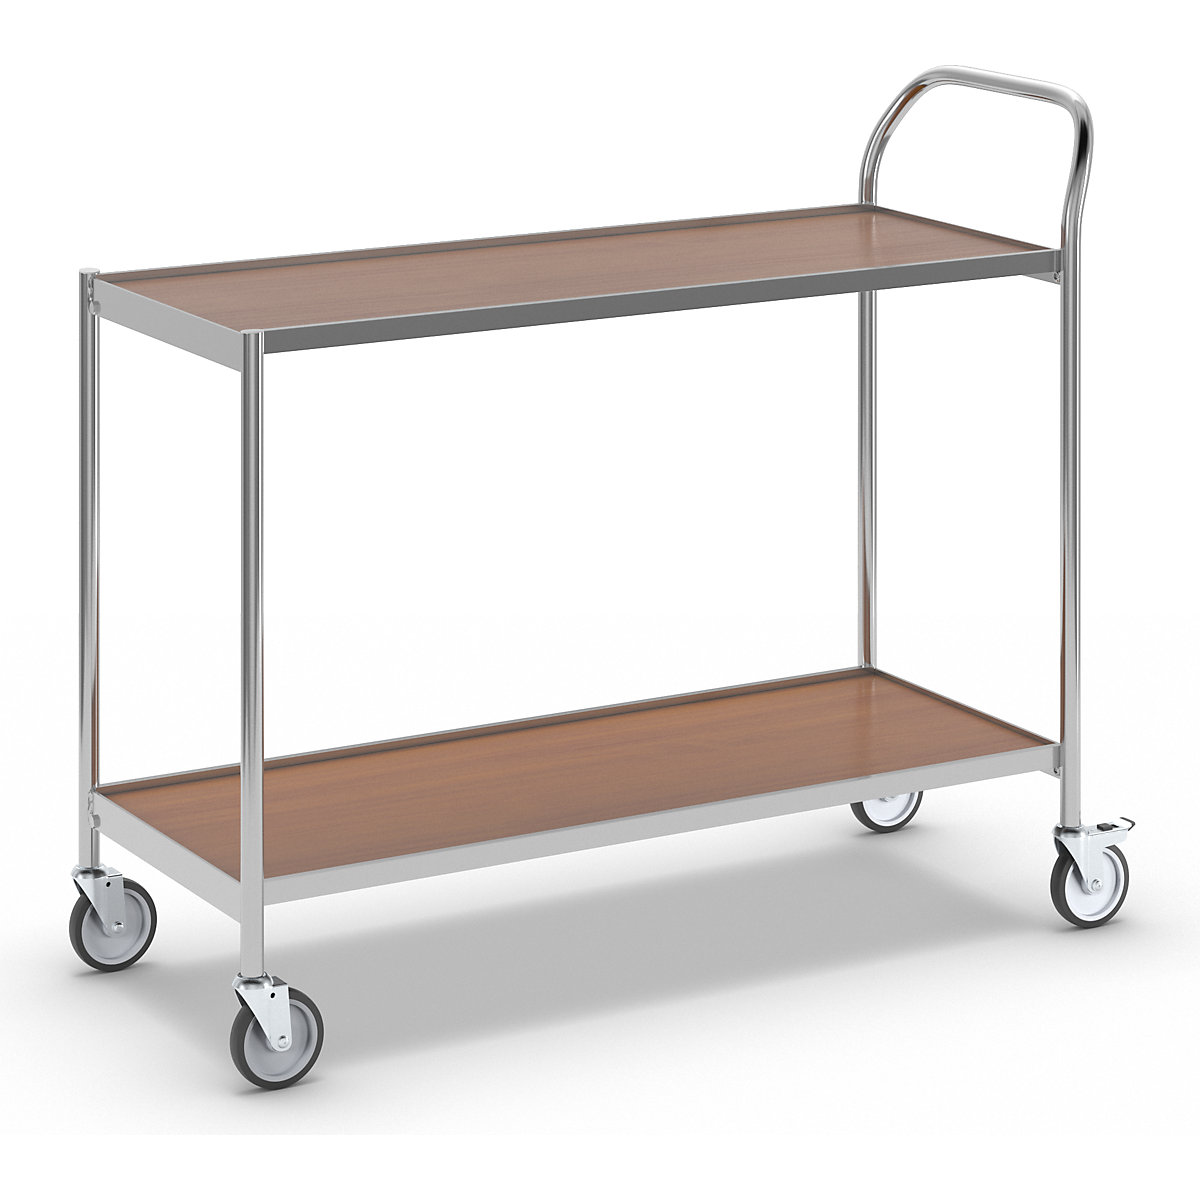 Stolový vozík – HelgeNyberg, 2 etáže, d x š 1000 x 420 mm, chrom / buk-9